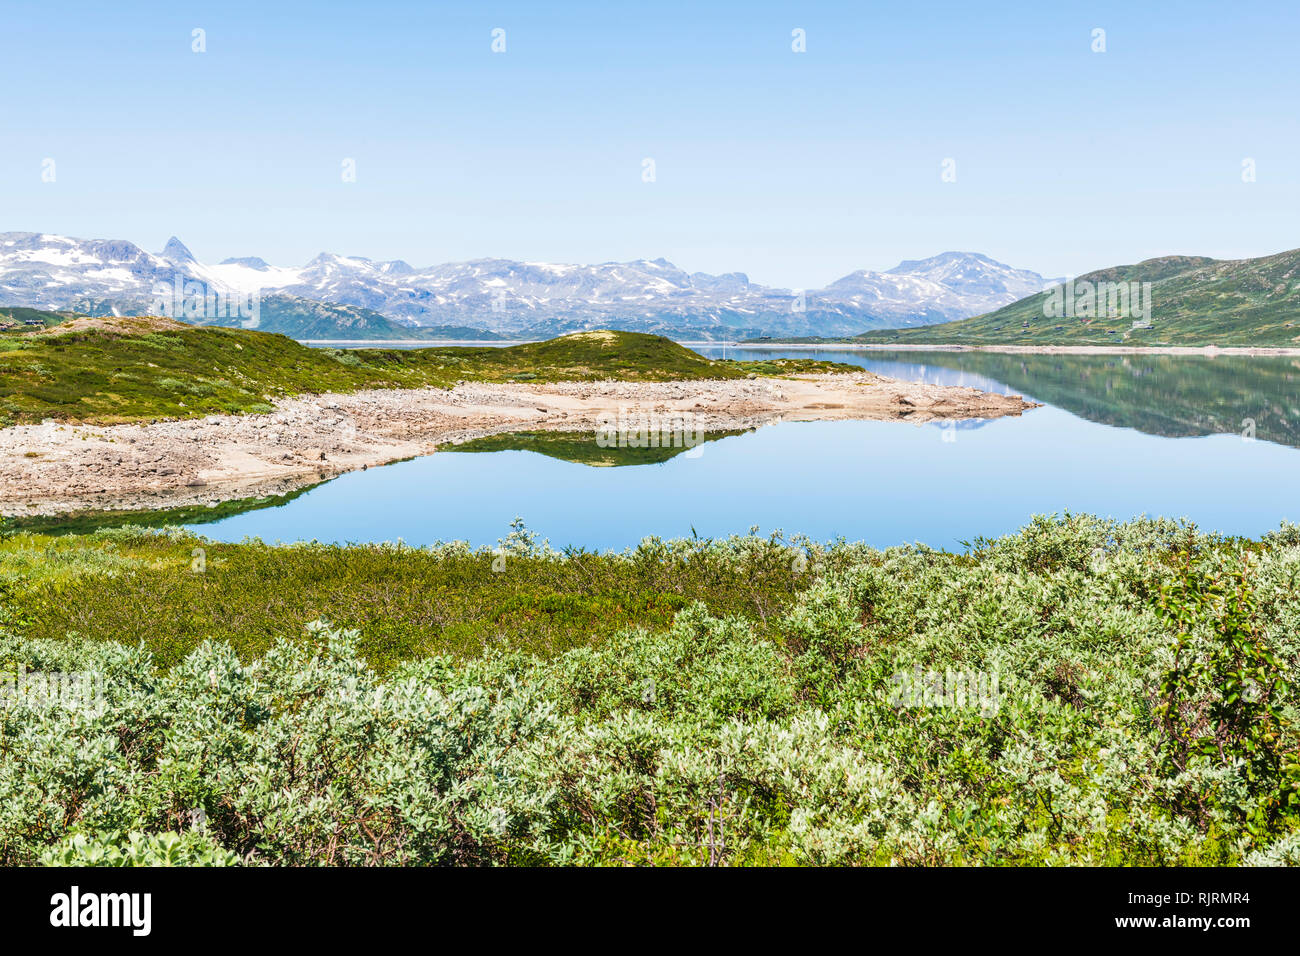 Lake Tyin surrounded by Jutunheimen mountains, Norway, Europe Stock Photo